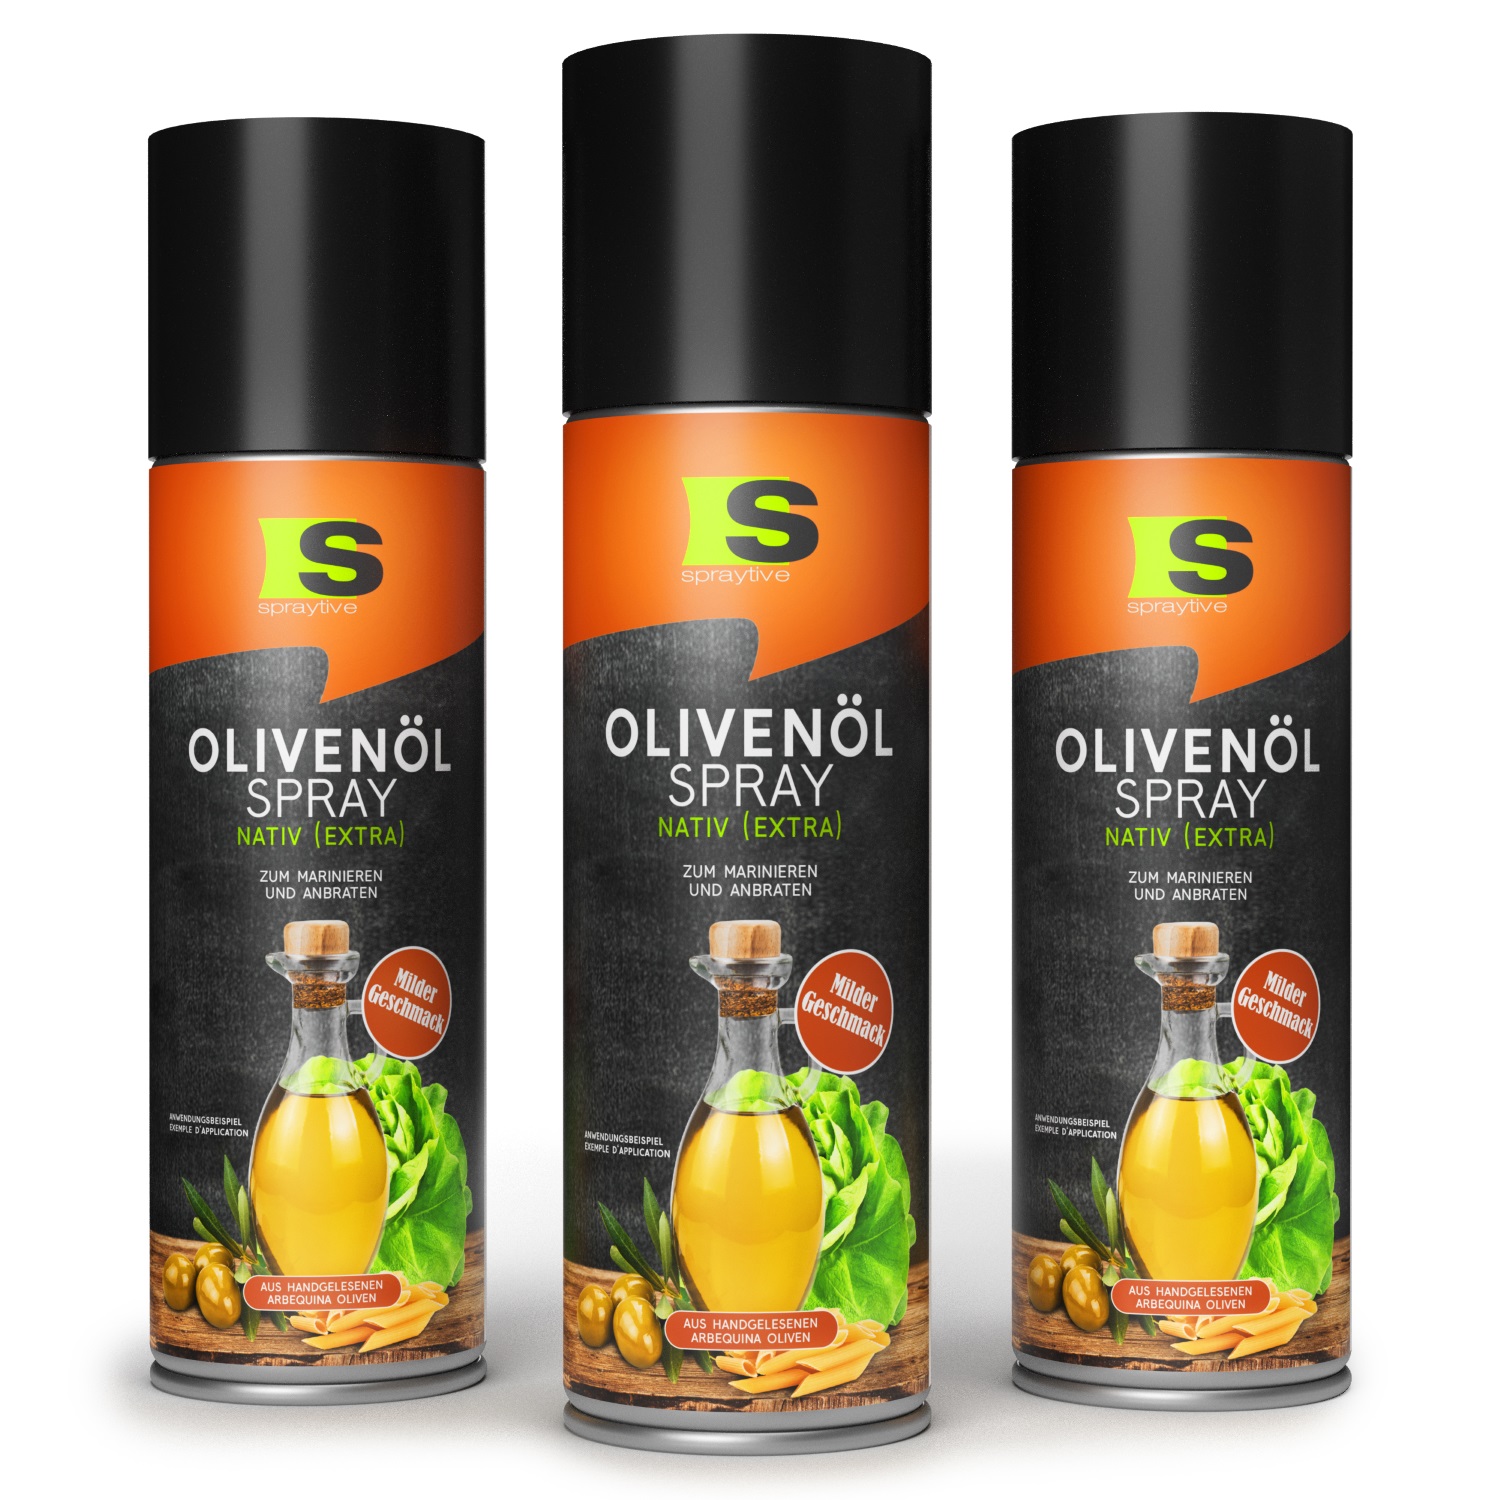 3 x 400ml Olivenöl Spray Nativ (Extra) - Zum Marinieren und Anbraten